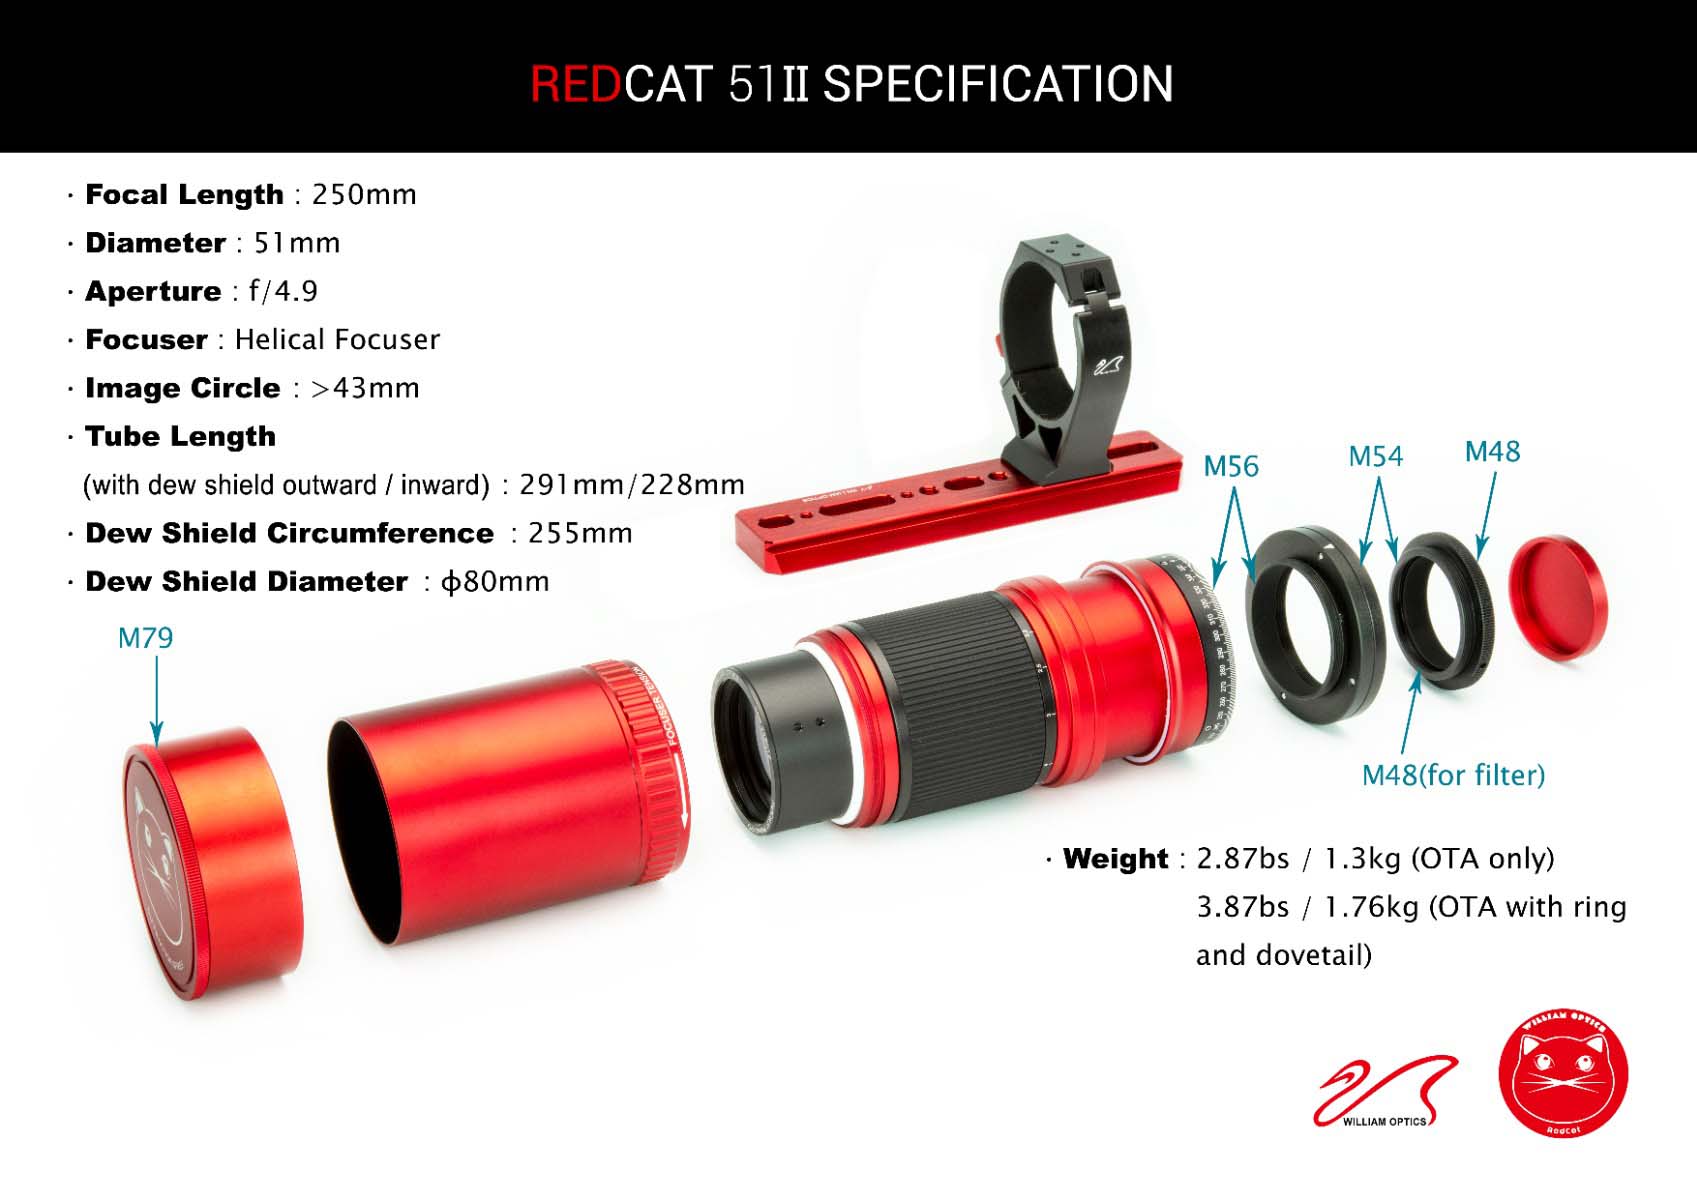 William Optics RedCat 51 II U V2.5 Specification